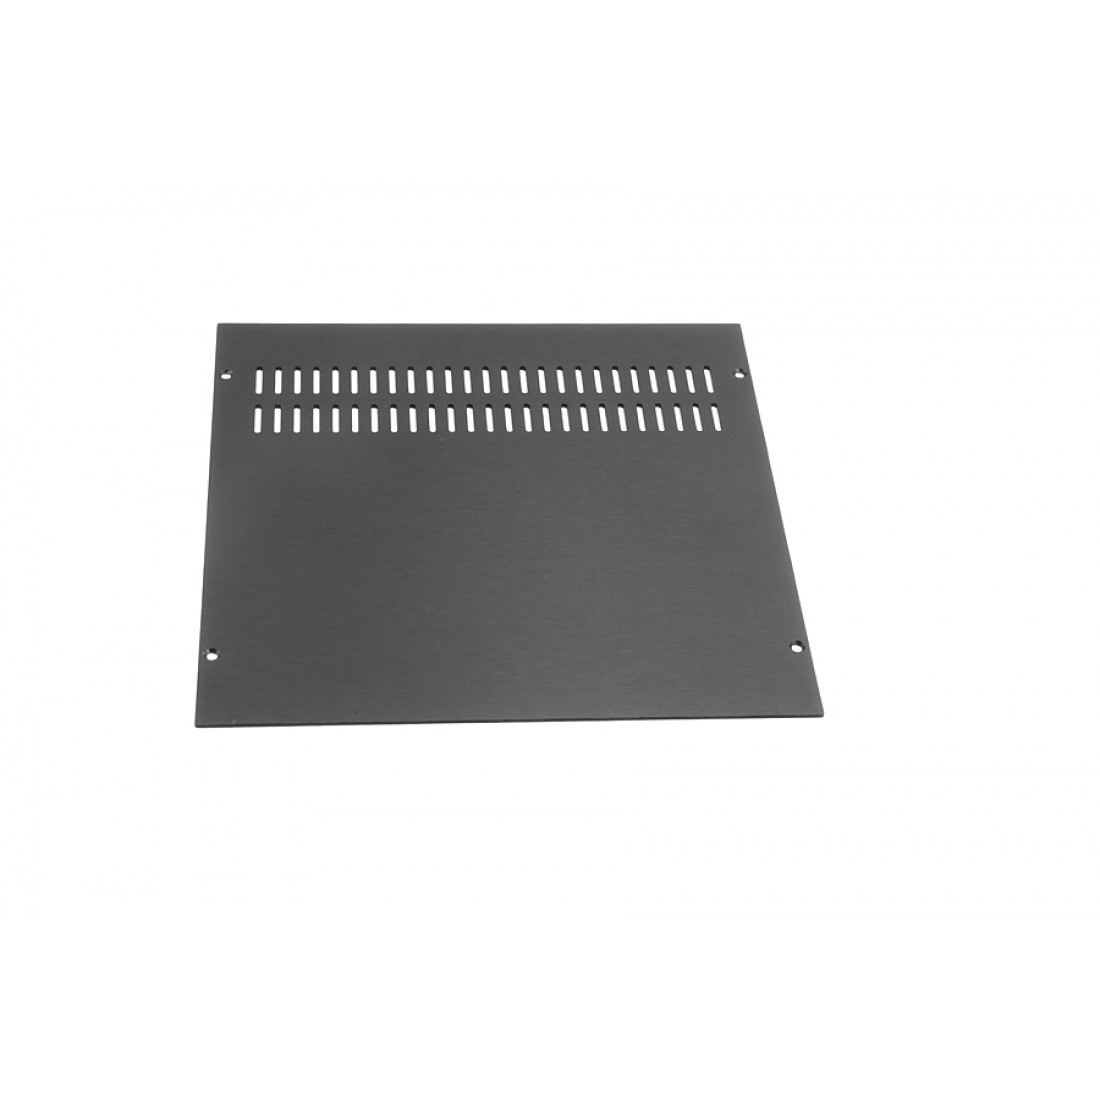 1NGXA243N - 1U Galaxy krabice, 230 x 230 x 40mm, 10mm panel černý